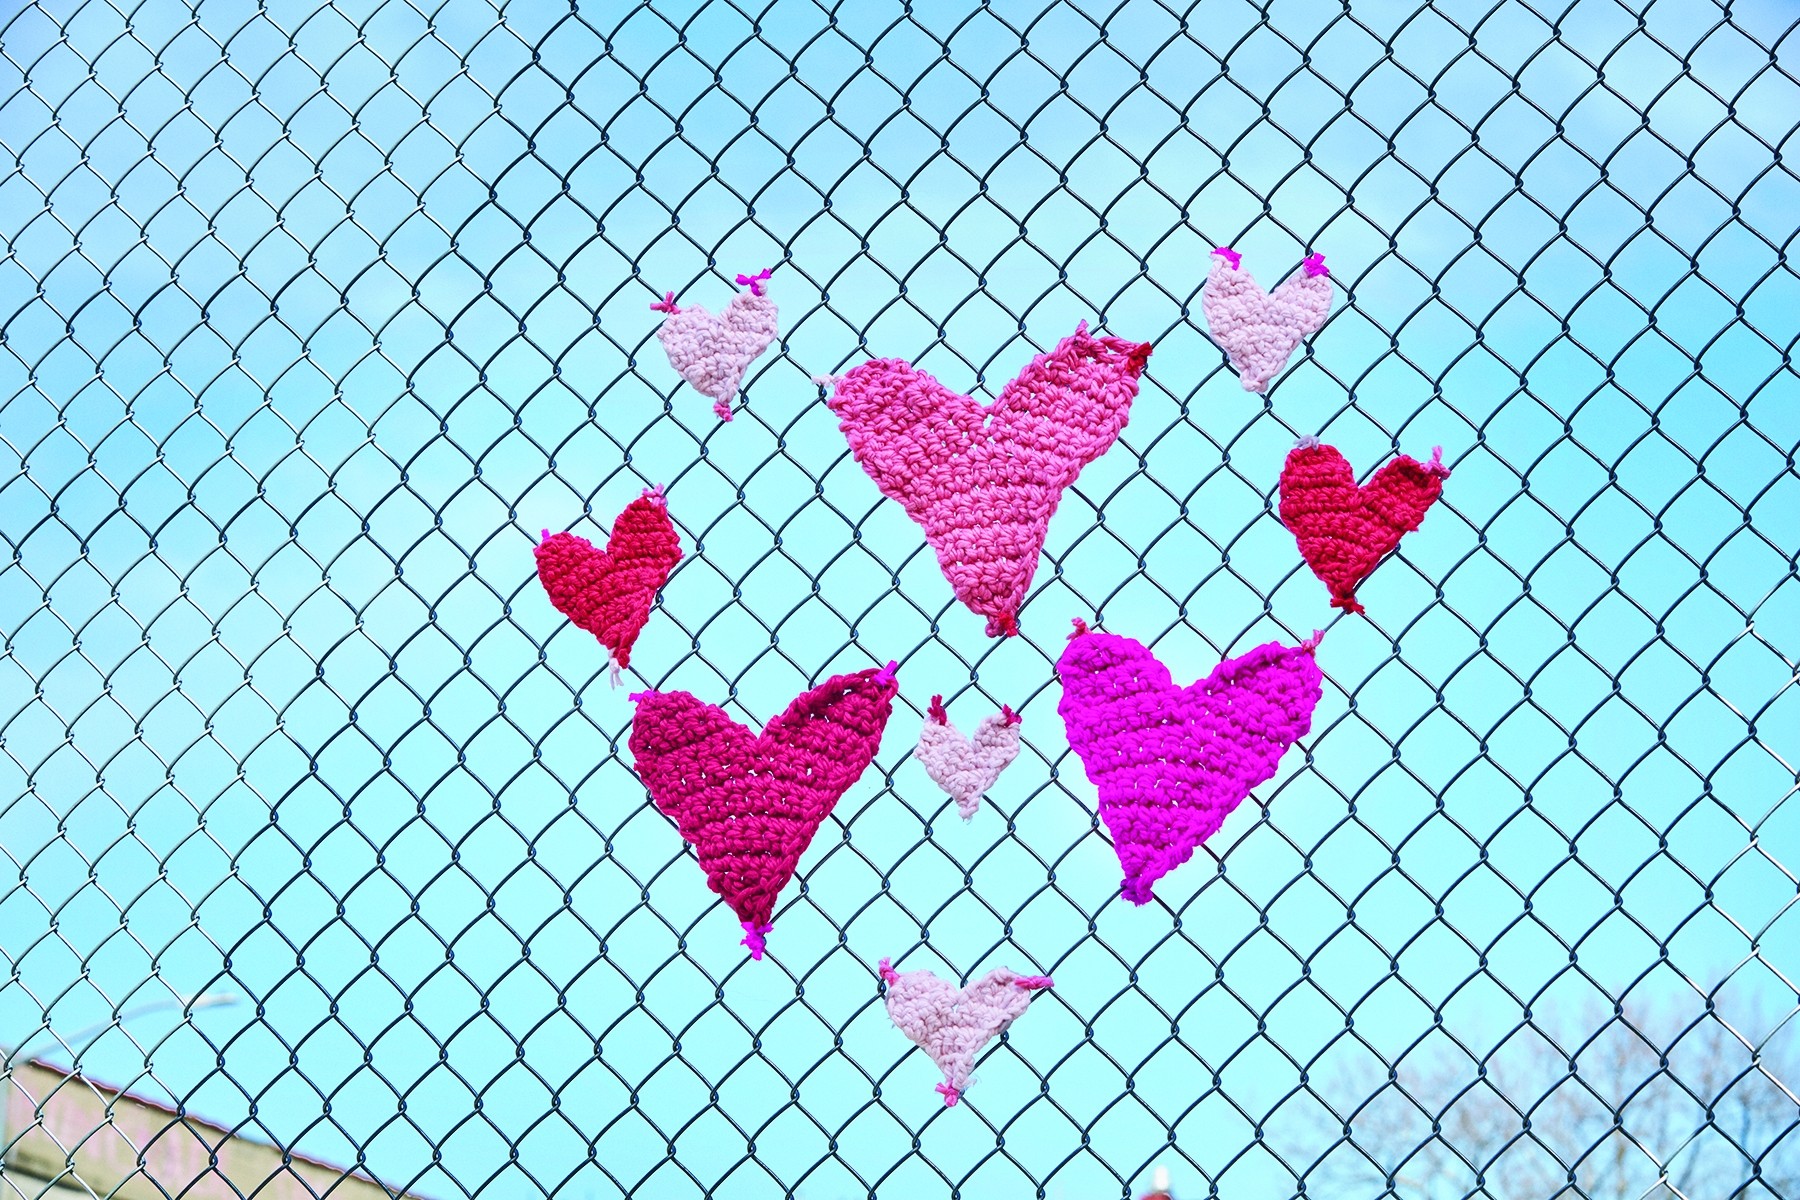 Spread the Love Hearts Yarnbomb